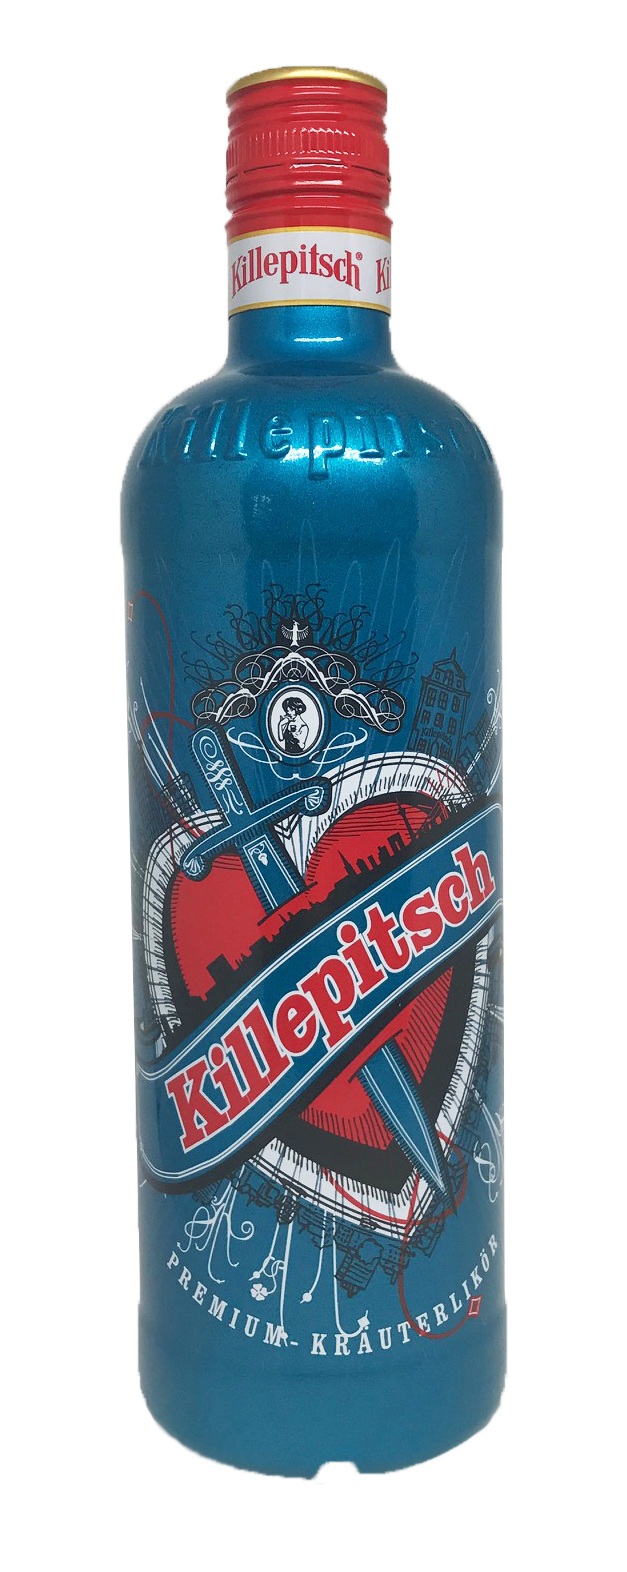 Killepitsch Petrol Designerflasche 0,7 Liter 42%vol.